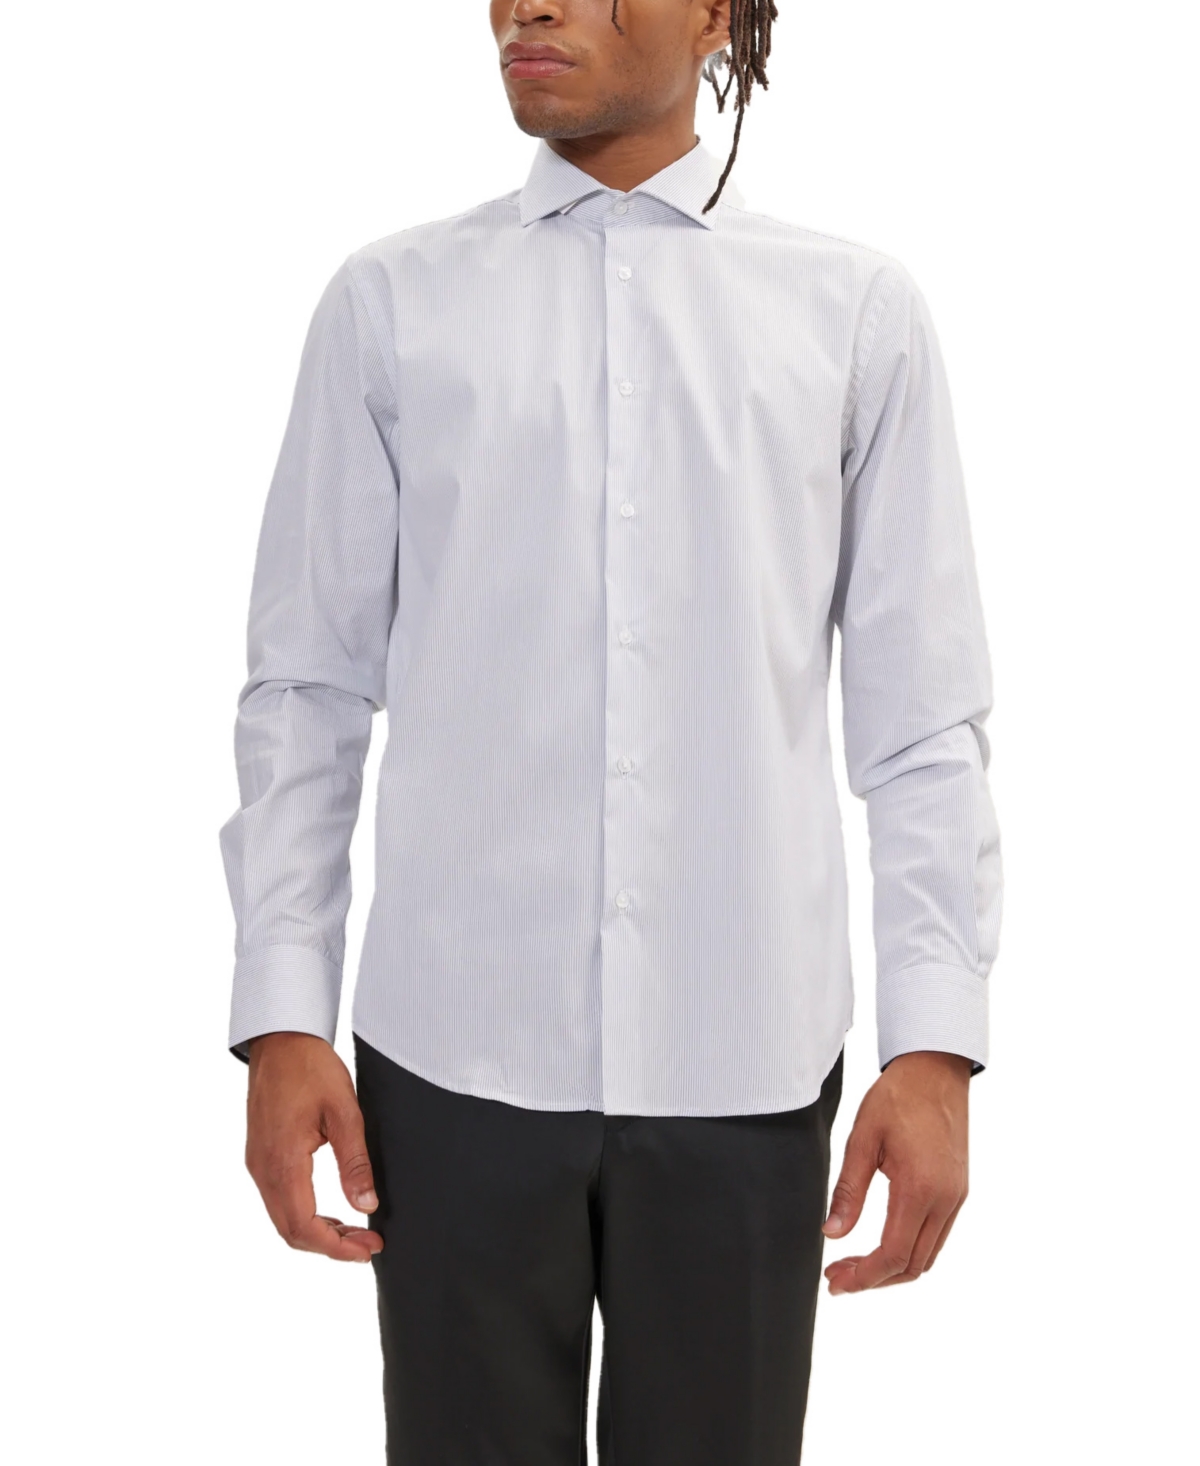 Men's Modern Spread Collar Fitted Shirt - Dark Blue Chevron